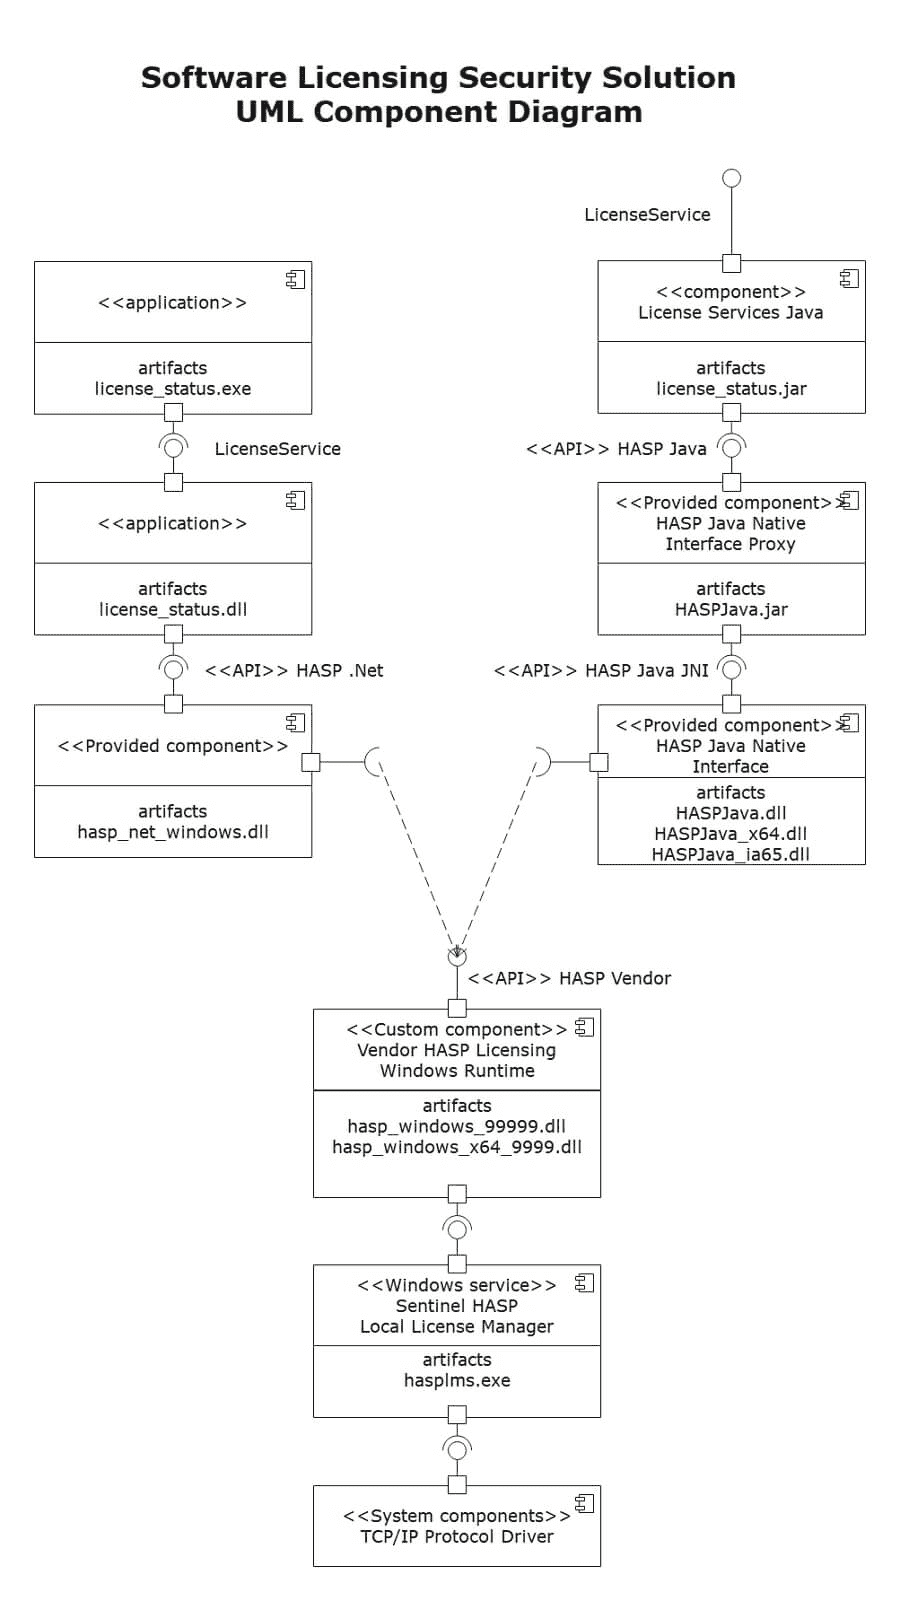 UMLコンポーネント図シェアと送信